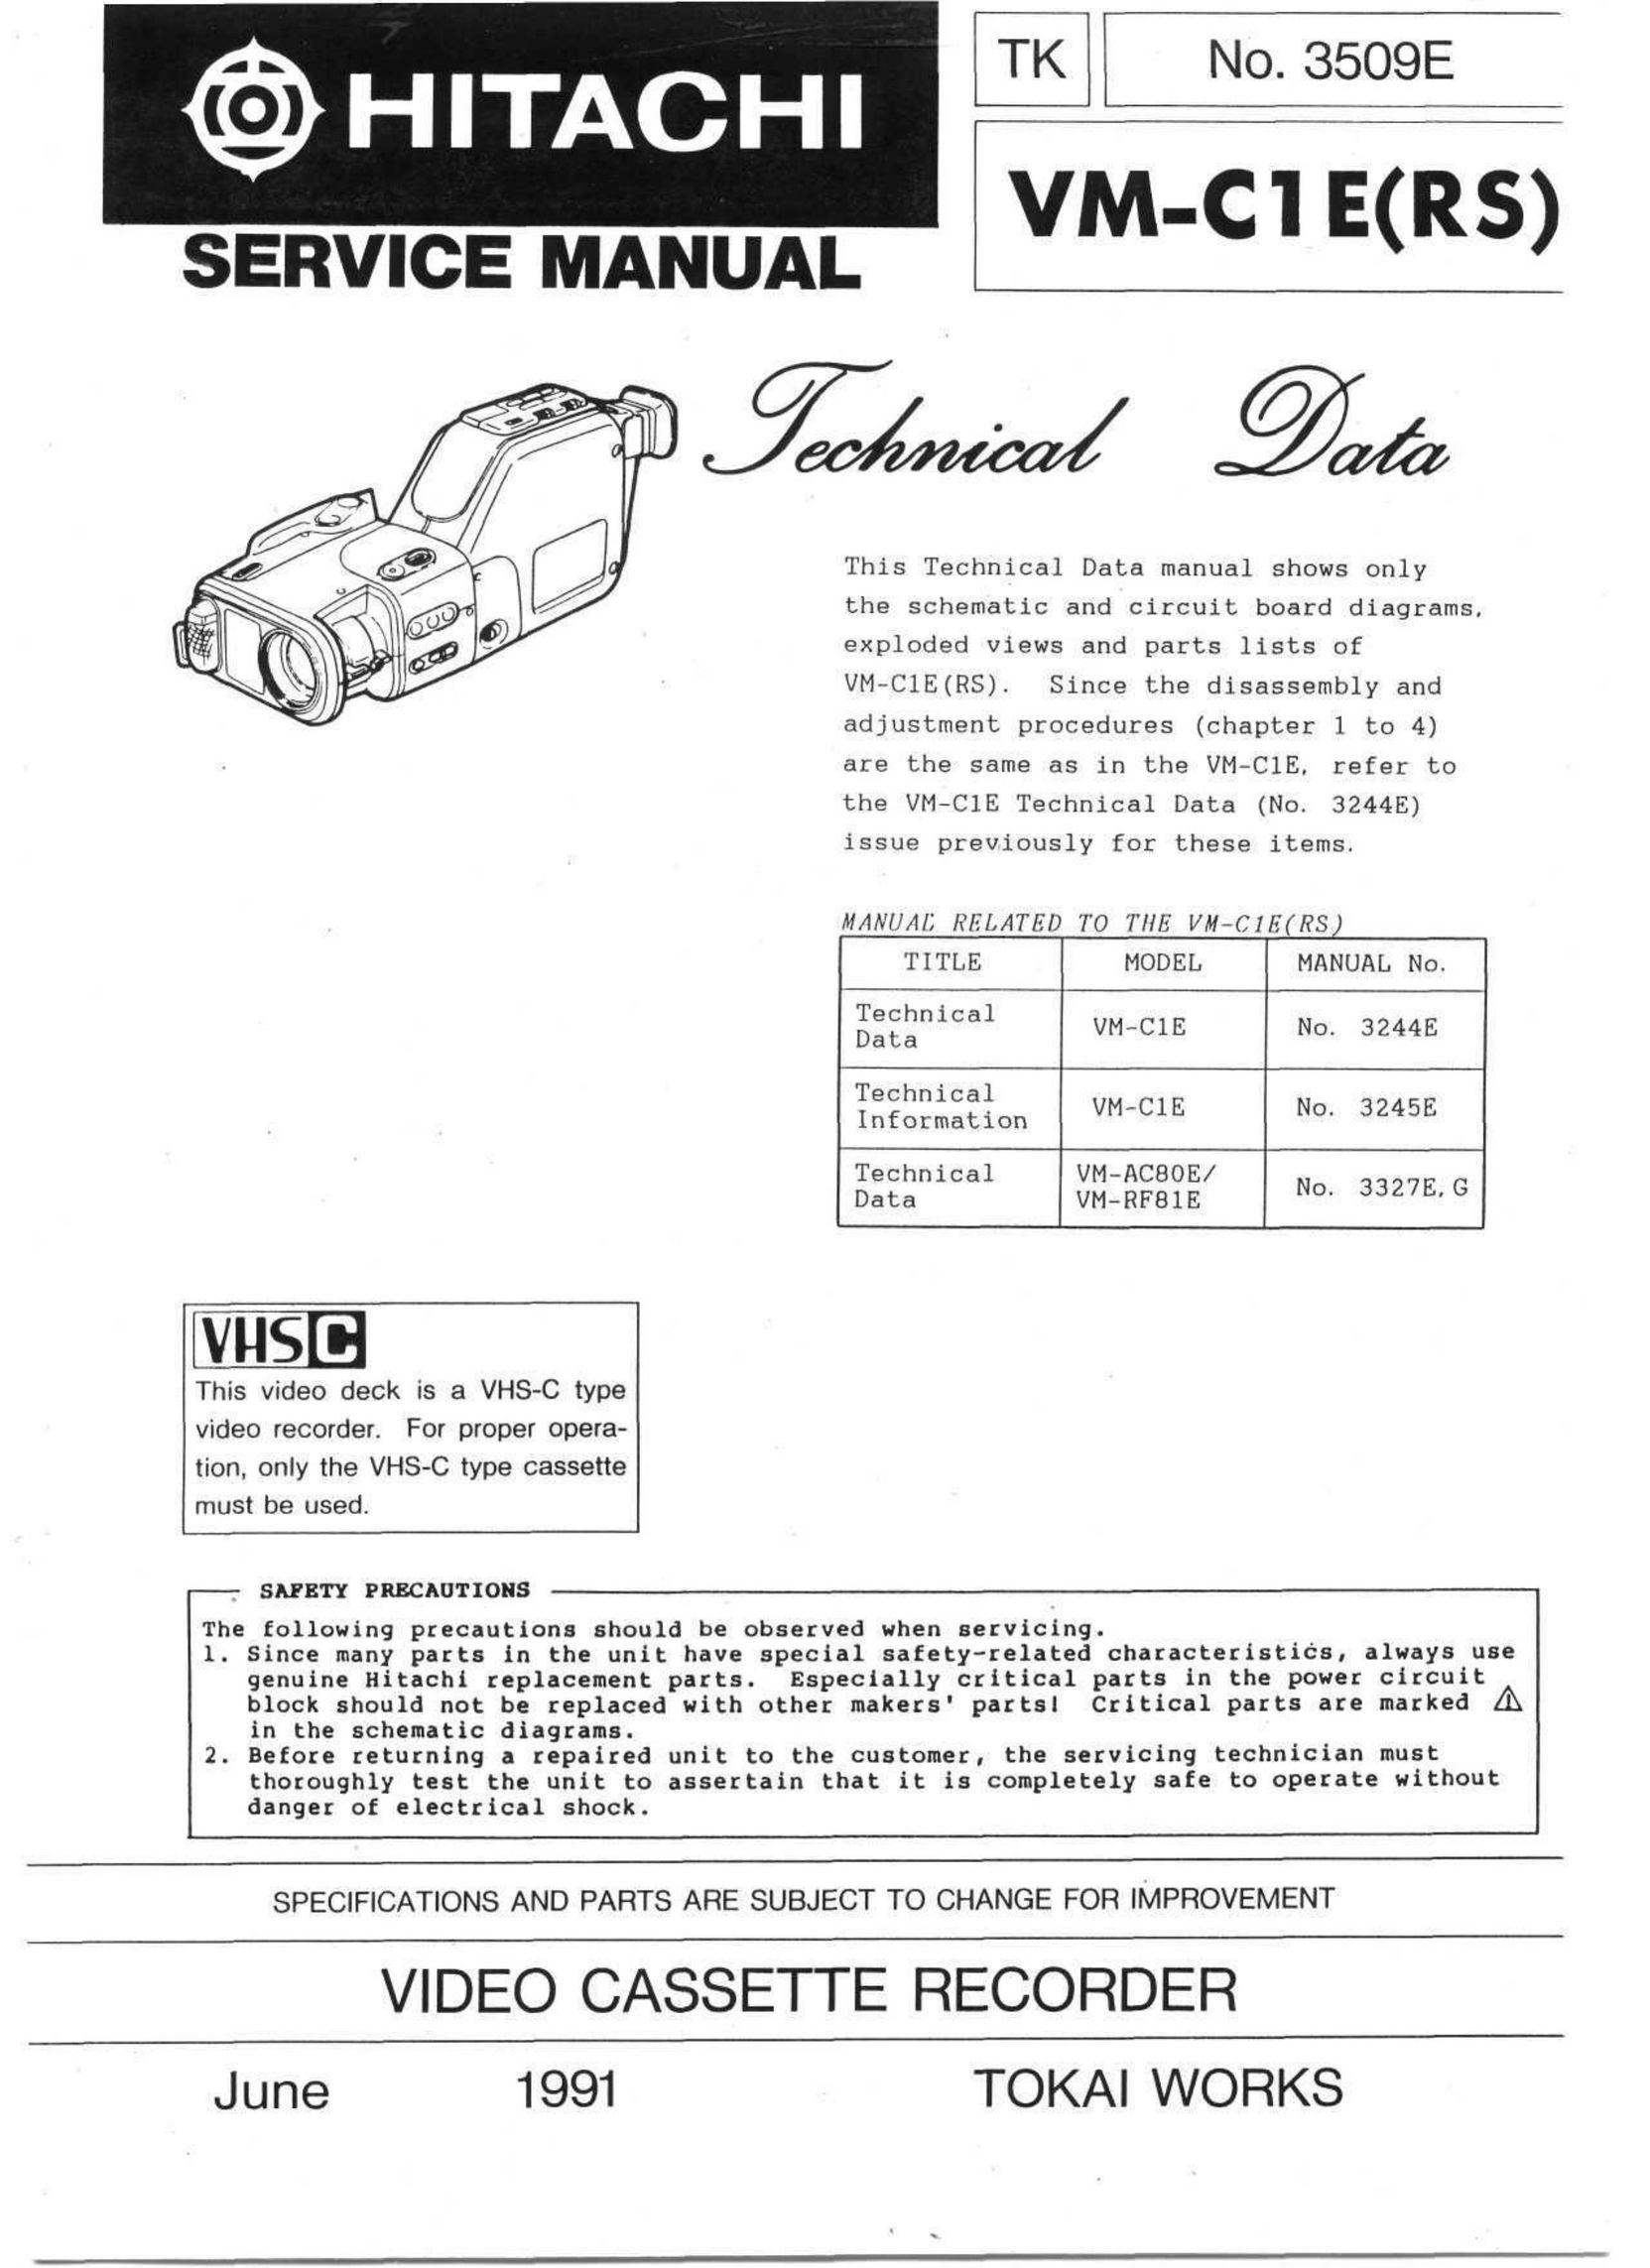 Hitachi VM-C1E(RS) VCR User Manual